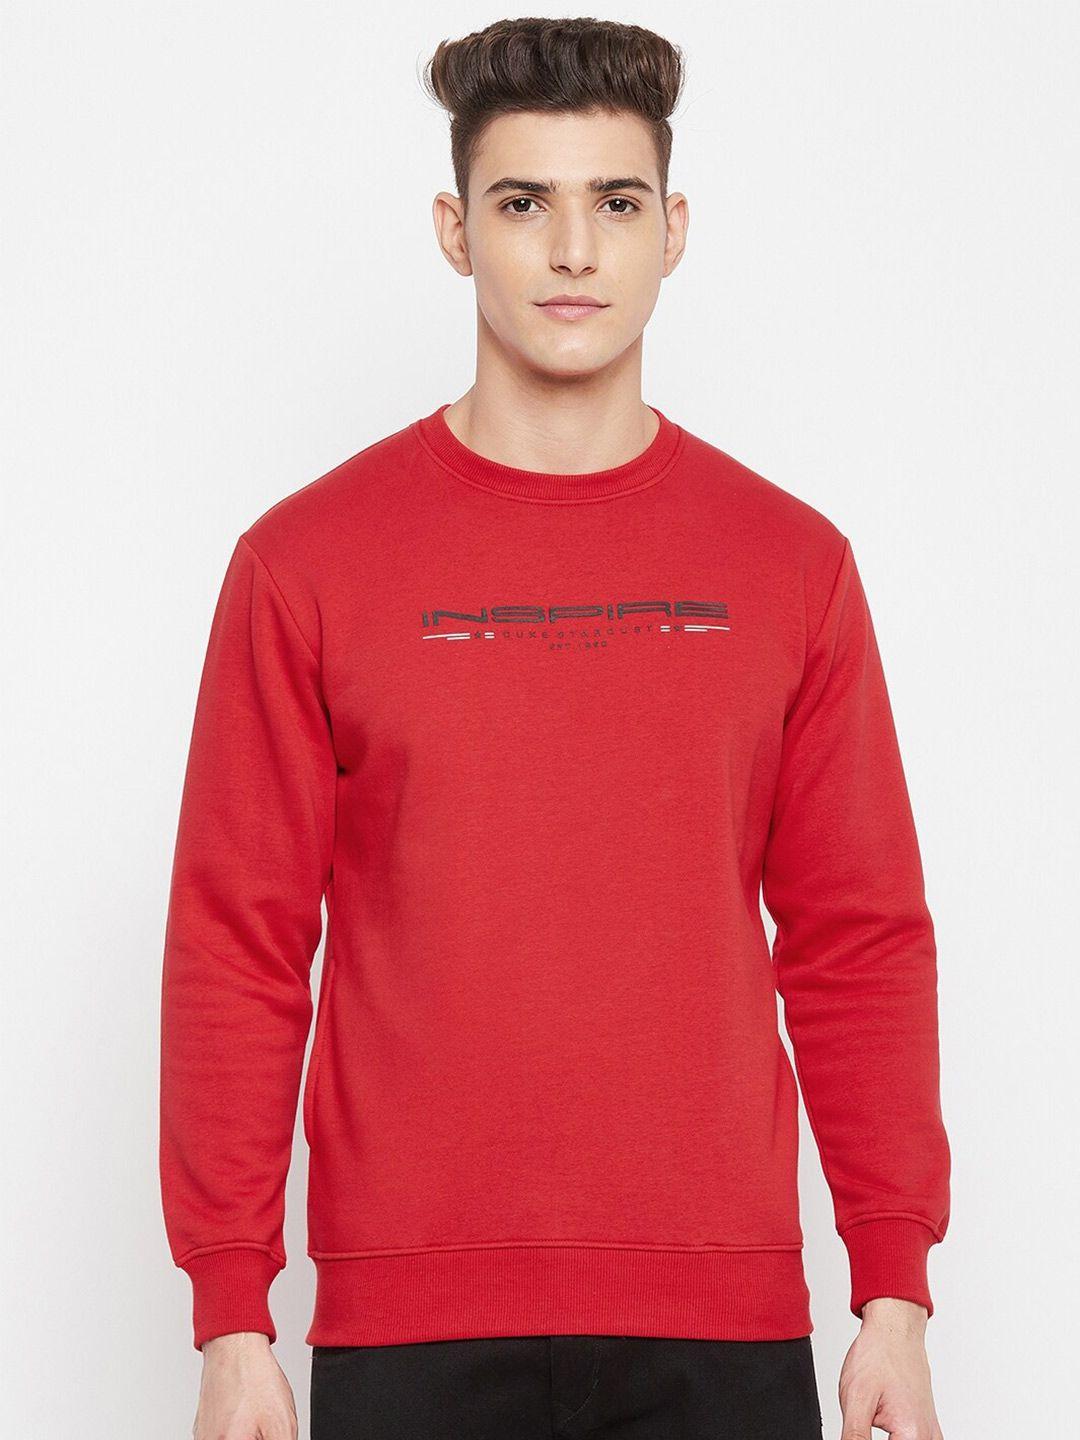 duke-men-red-sweatshirt